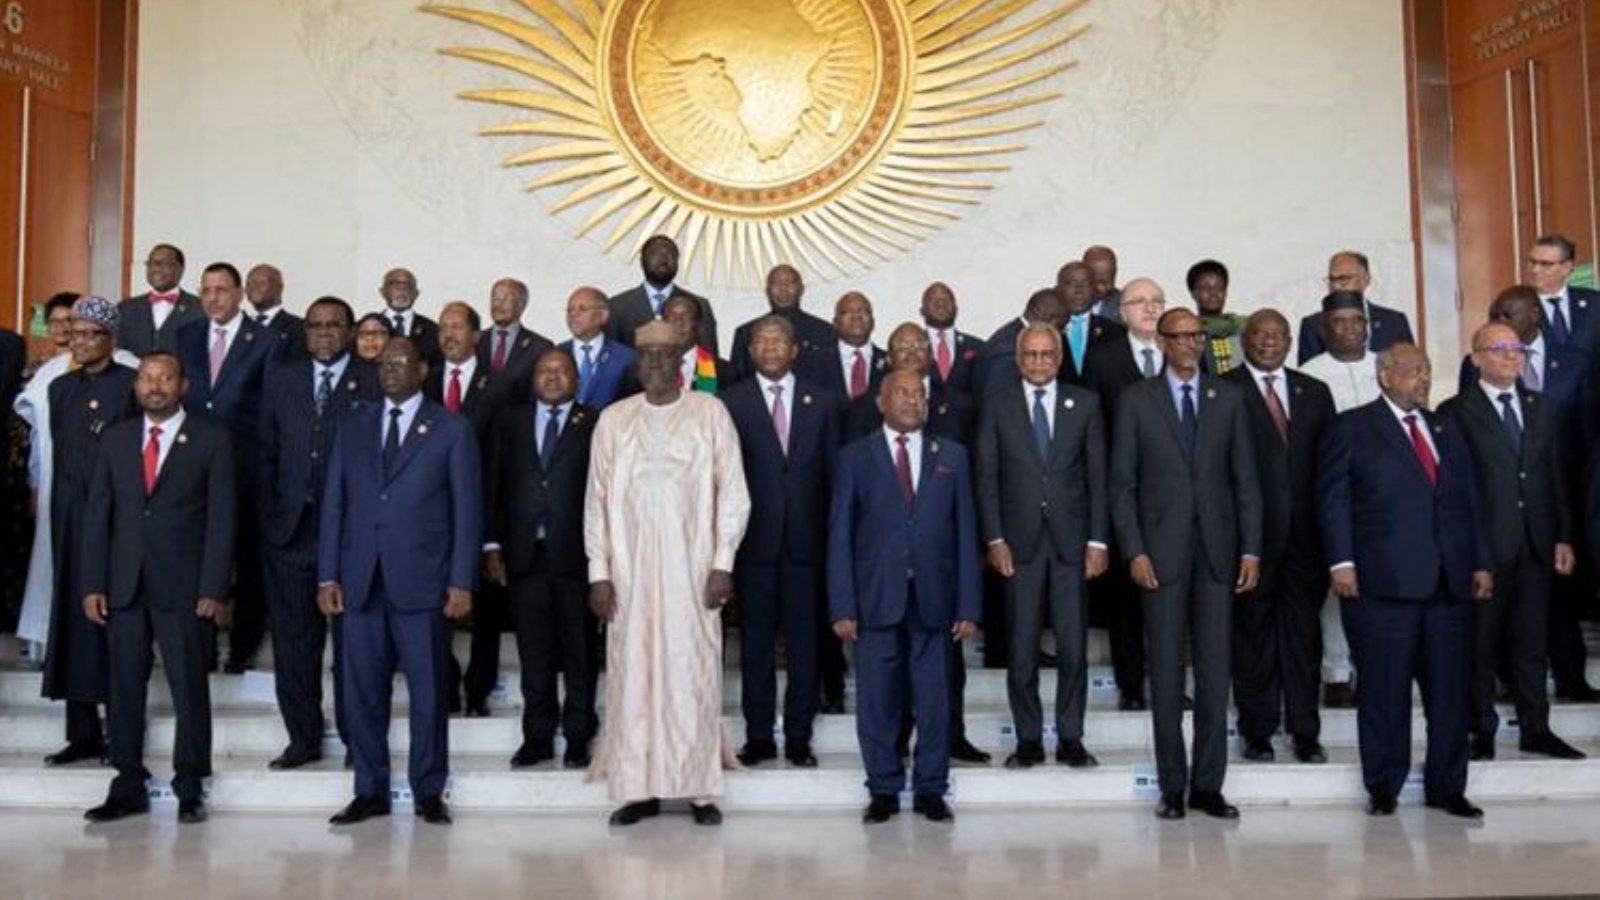 رؤساء الدول الأفريقية يقفون لالتقاط صورة جماعية مع أنطونيو جوتيريس ، الأمين العام للأمم المتحدة خلال افتتاح الدورة العادية السادسة والثلاثين لمؤتمر الاتحاد الأفريقي في مقر الاتحاد الأفريقي في أديس أبابا، إثيوبيا، 18 فبراير 2023